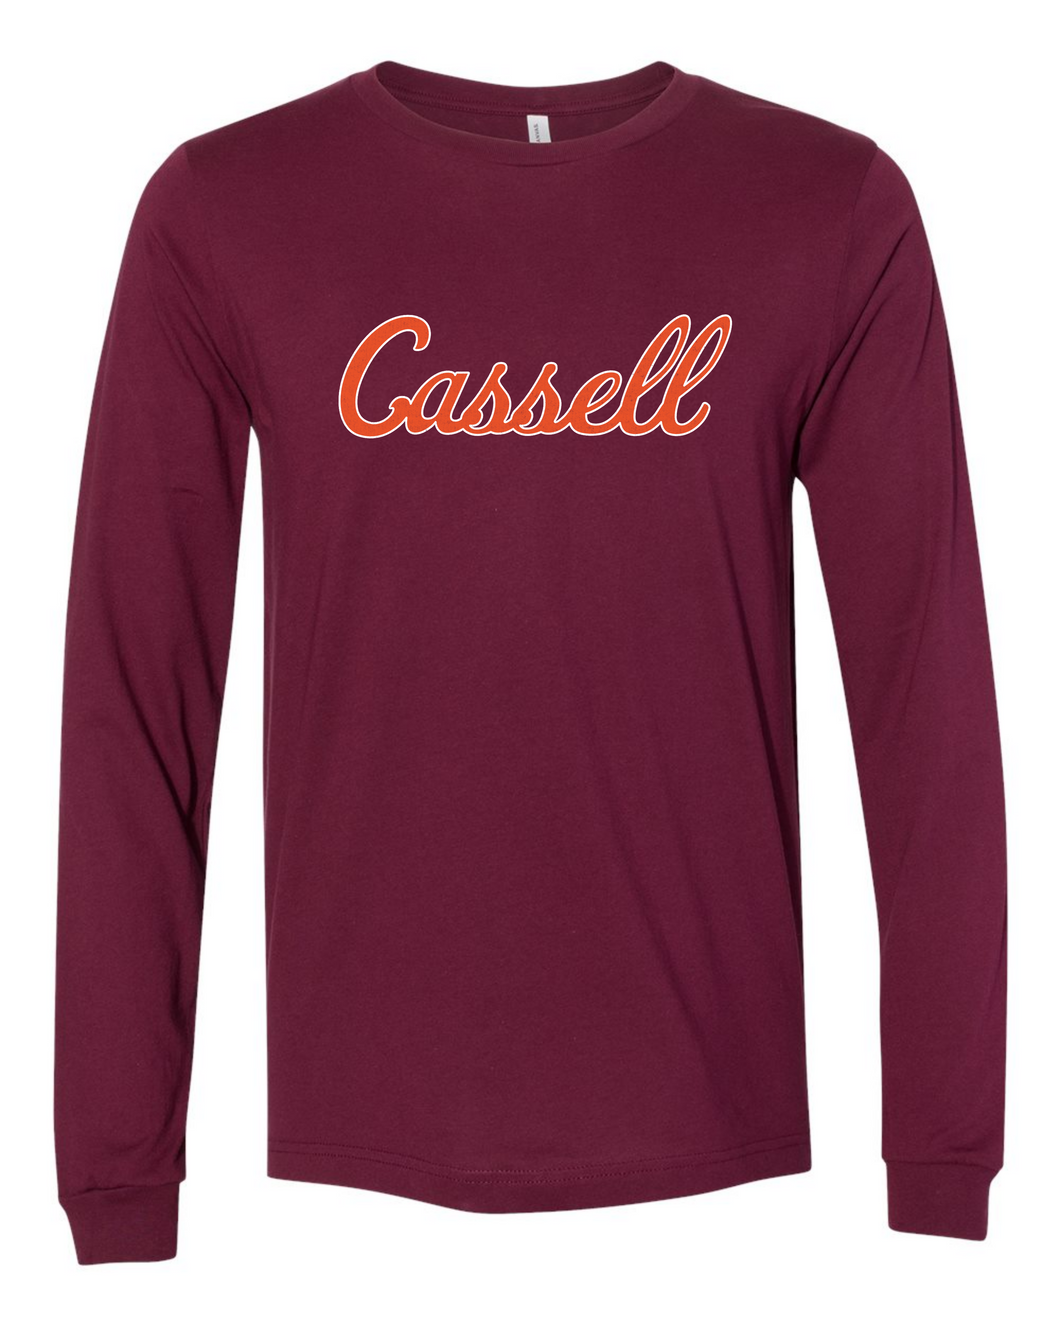 Cassell Script Long Sleeve Shirt - Maroon